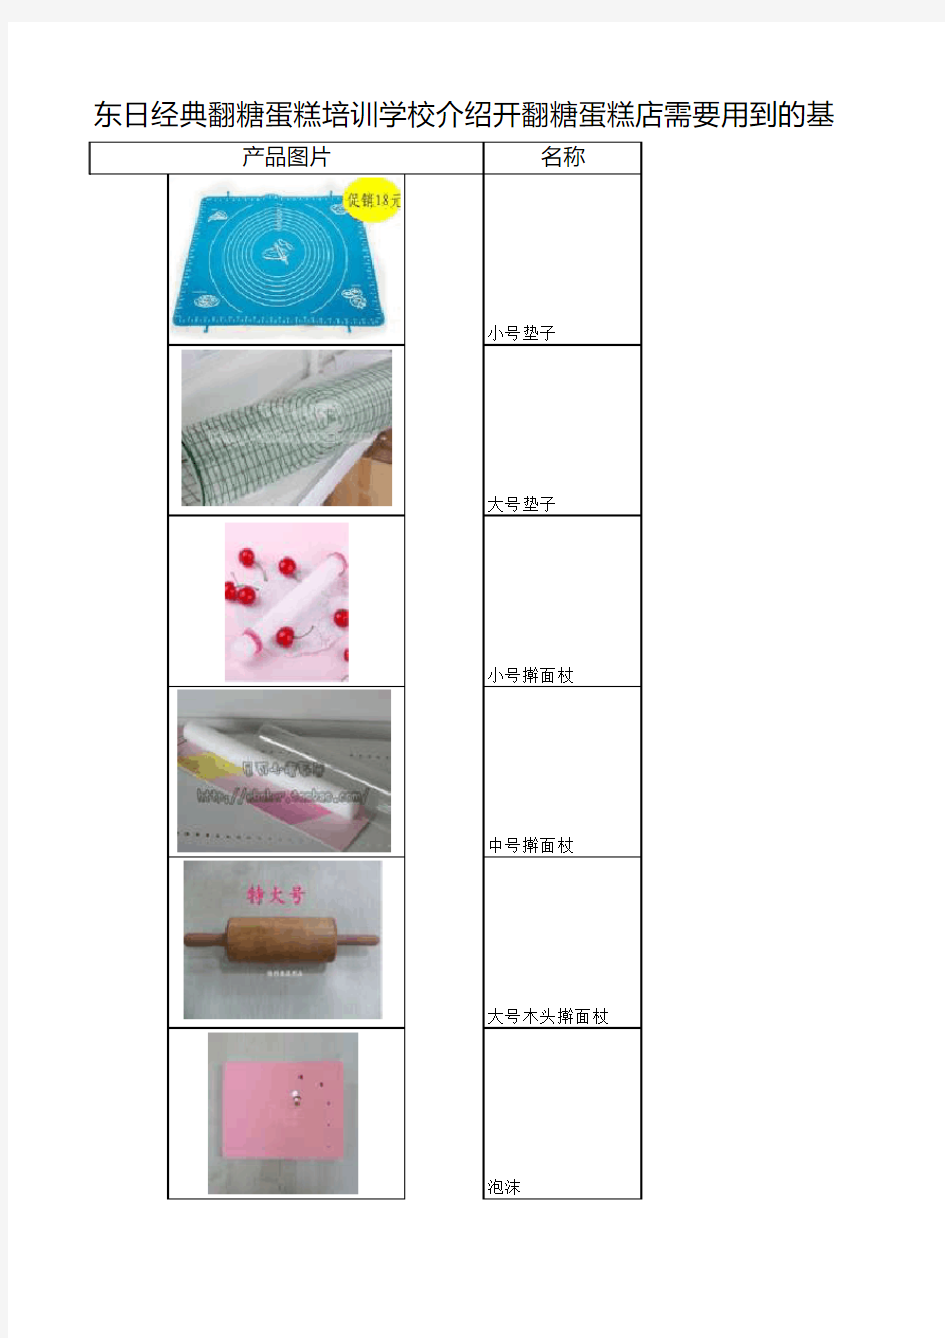 东日经典翻糖蛋糕培训学校介绍开翻糖蛋糕店需要用到的基础工具